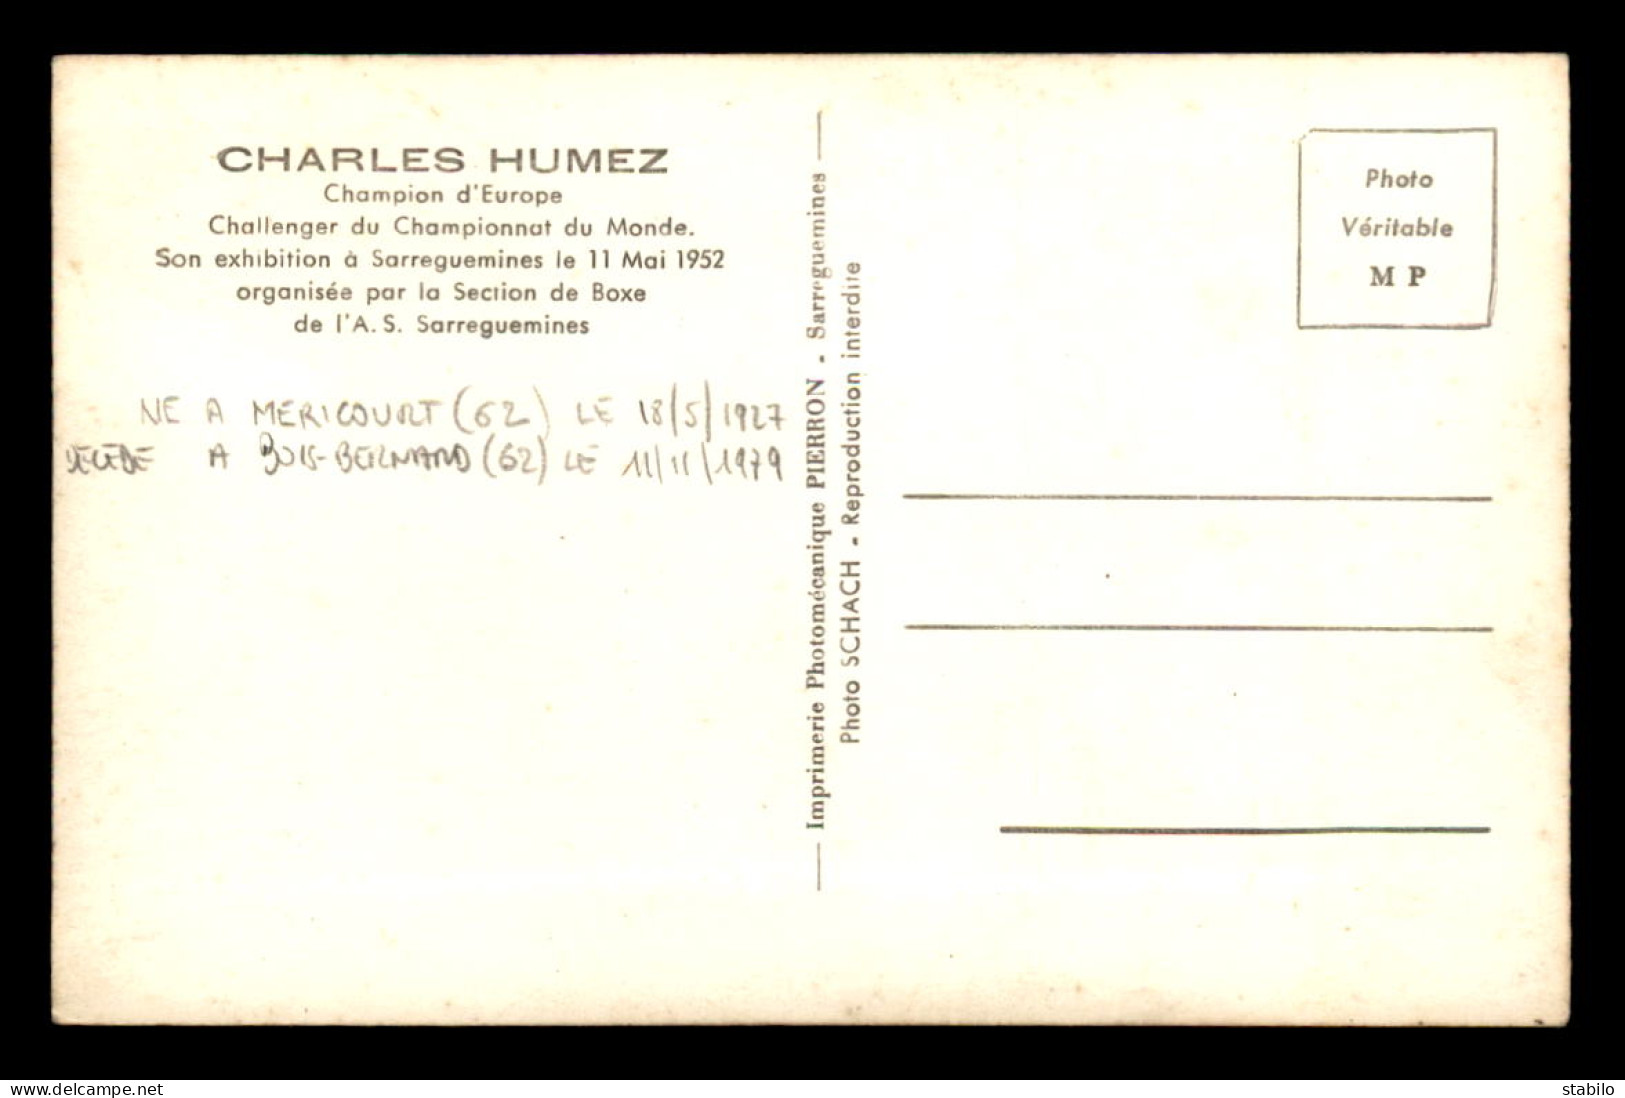 SPORTS - BOXE - CHARLES HUMEZ, CHAMPION D'EUROPE - EXHIBITION A SARREGUEMINES LE 11 MAI 1952 - AUTOGRAPHE  - Boxe